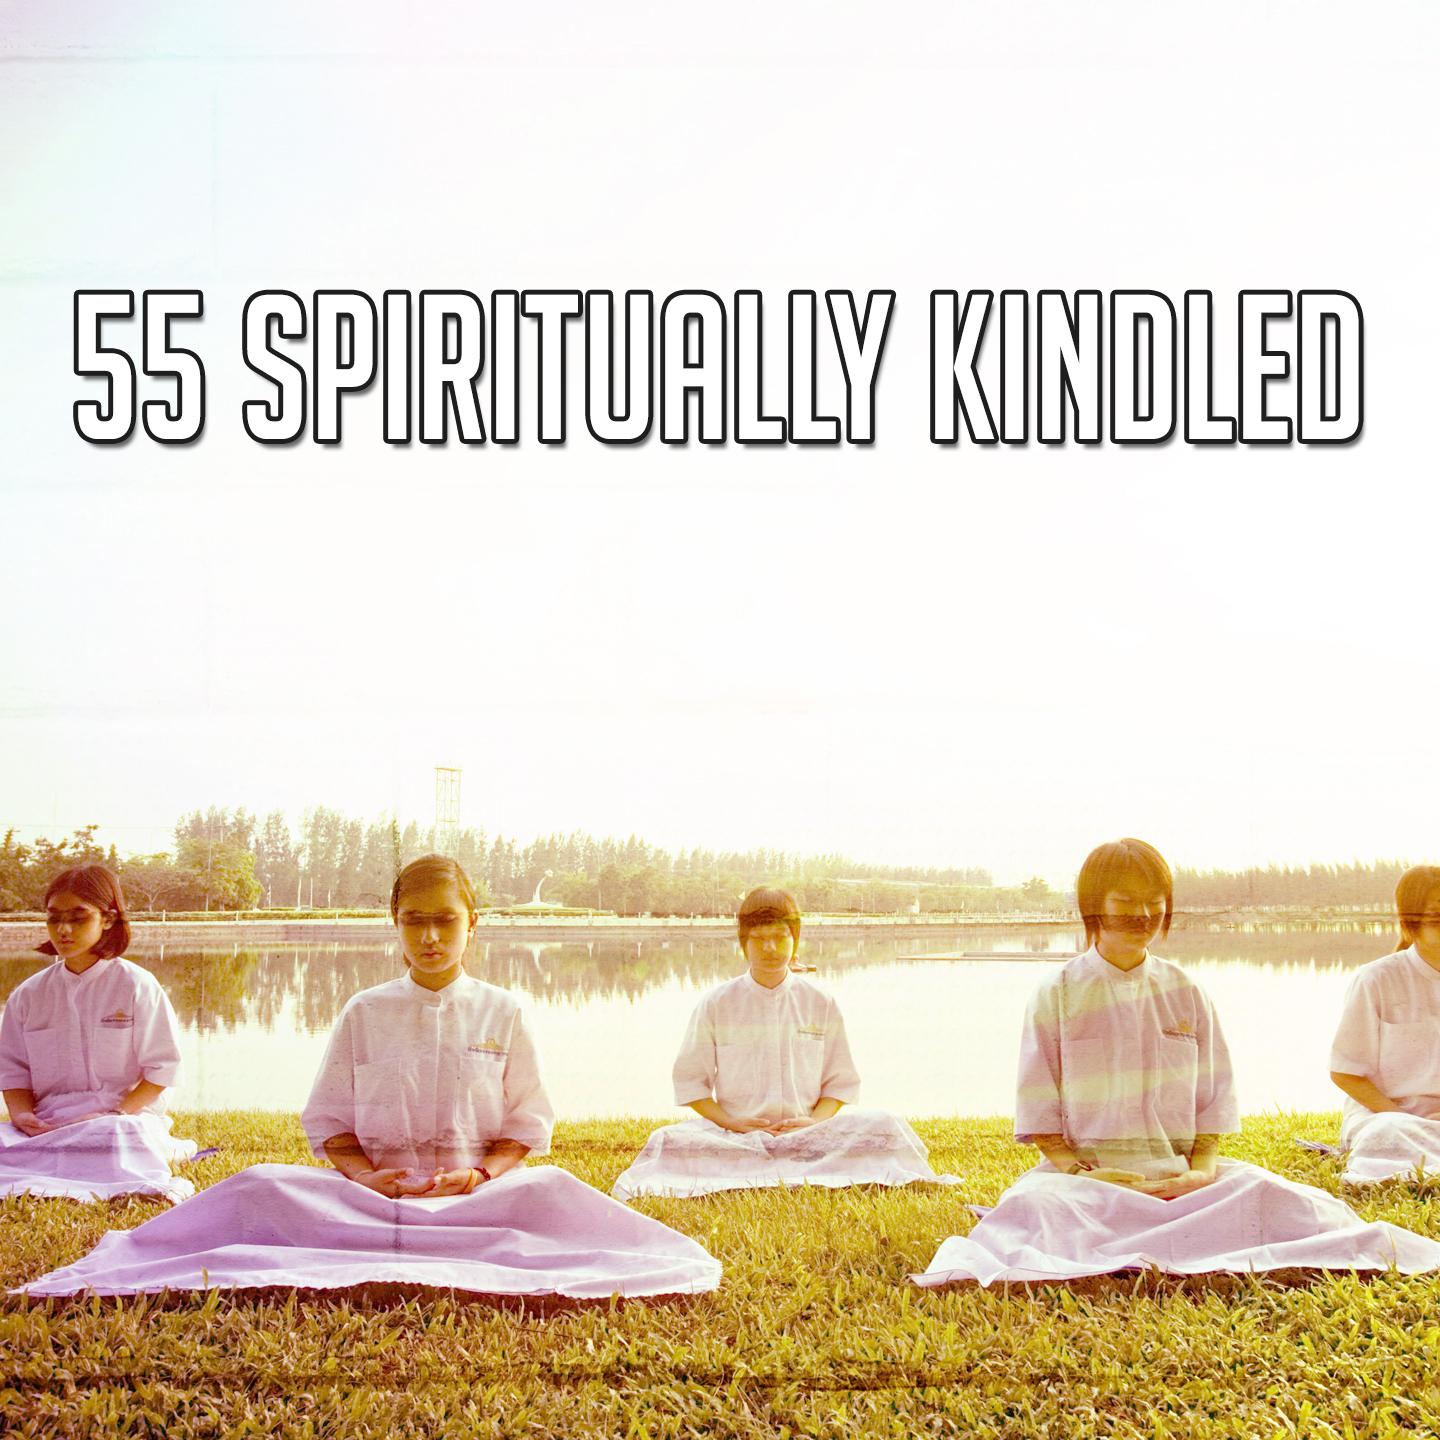 55 Spiritually Kindled